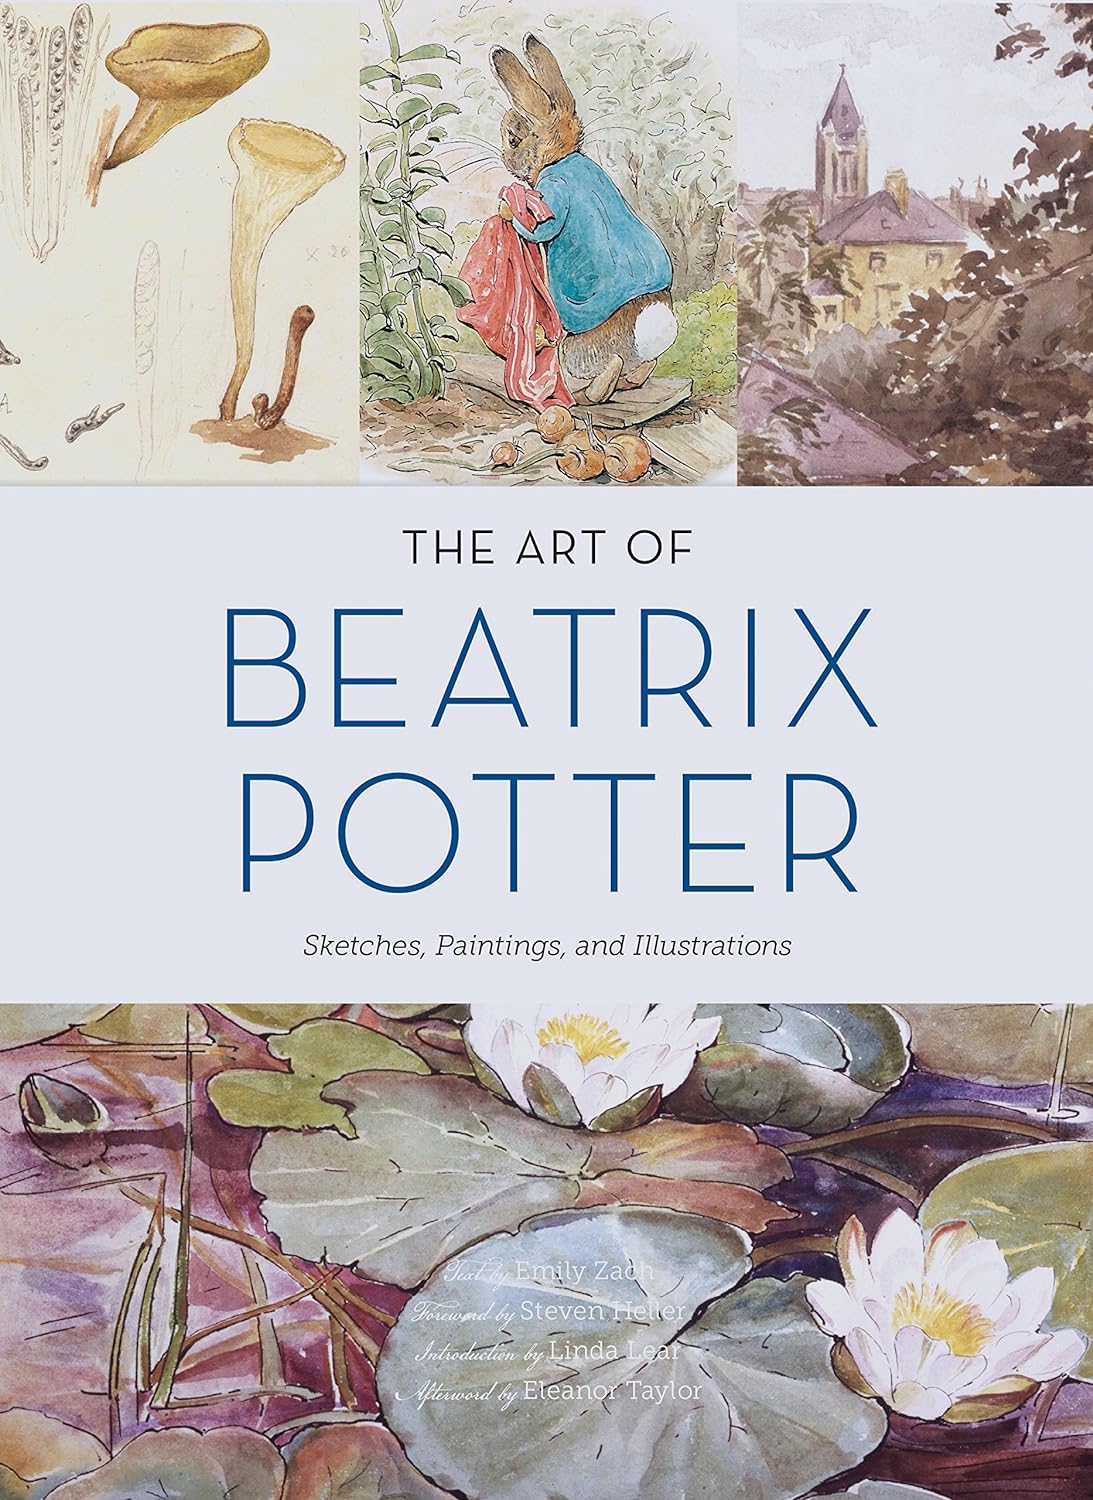 The Art of Beatrix Potter